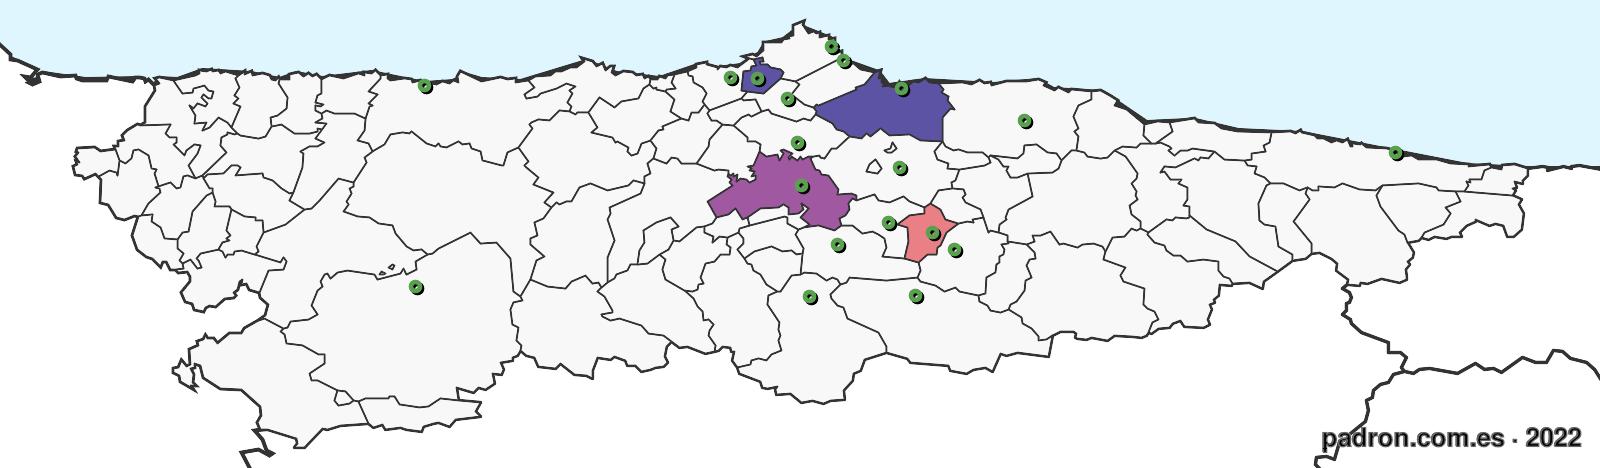 burkineses en asturias.